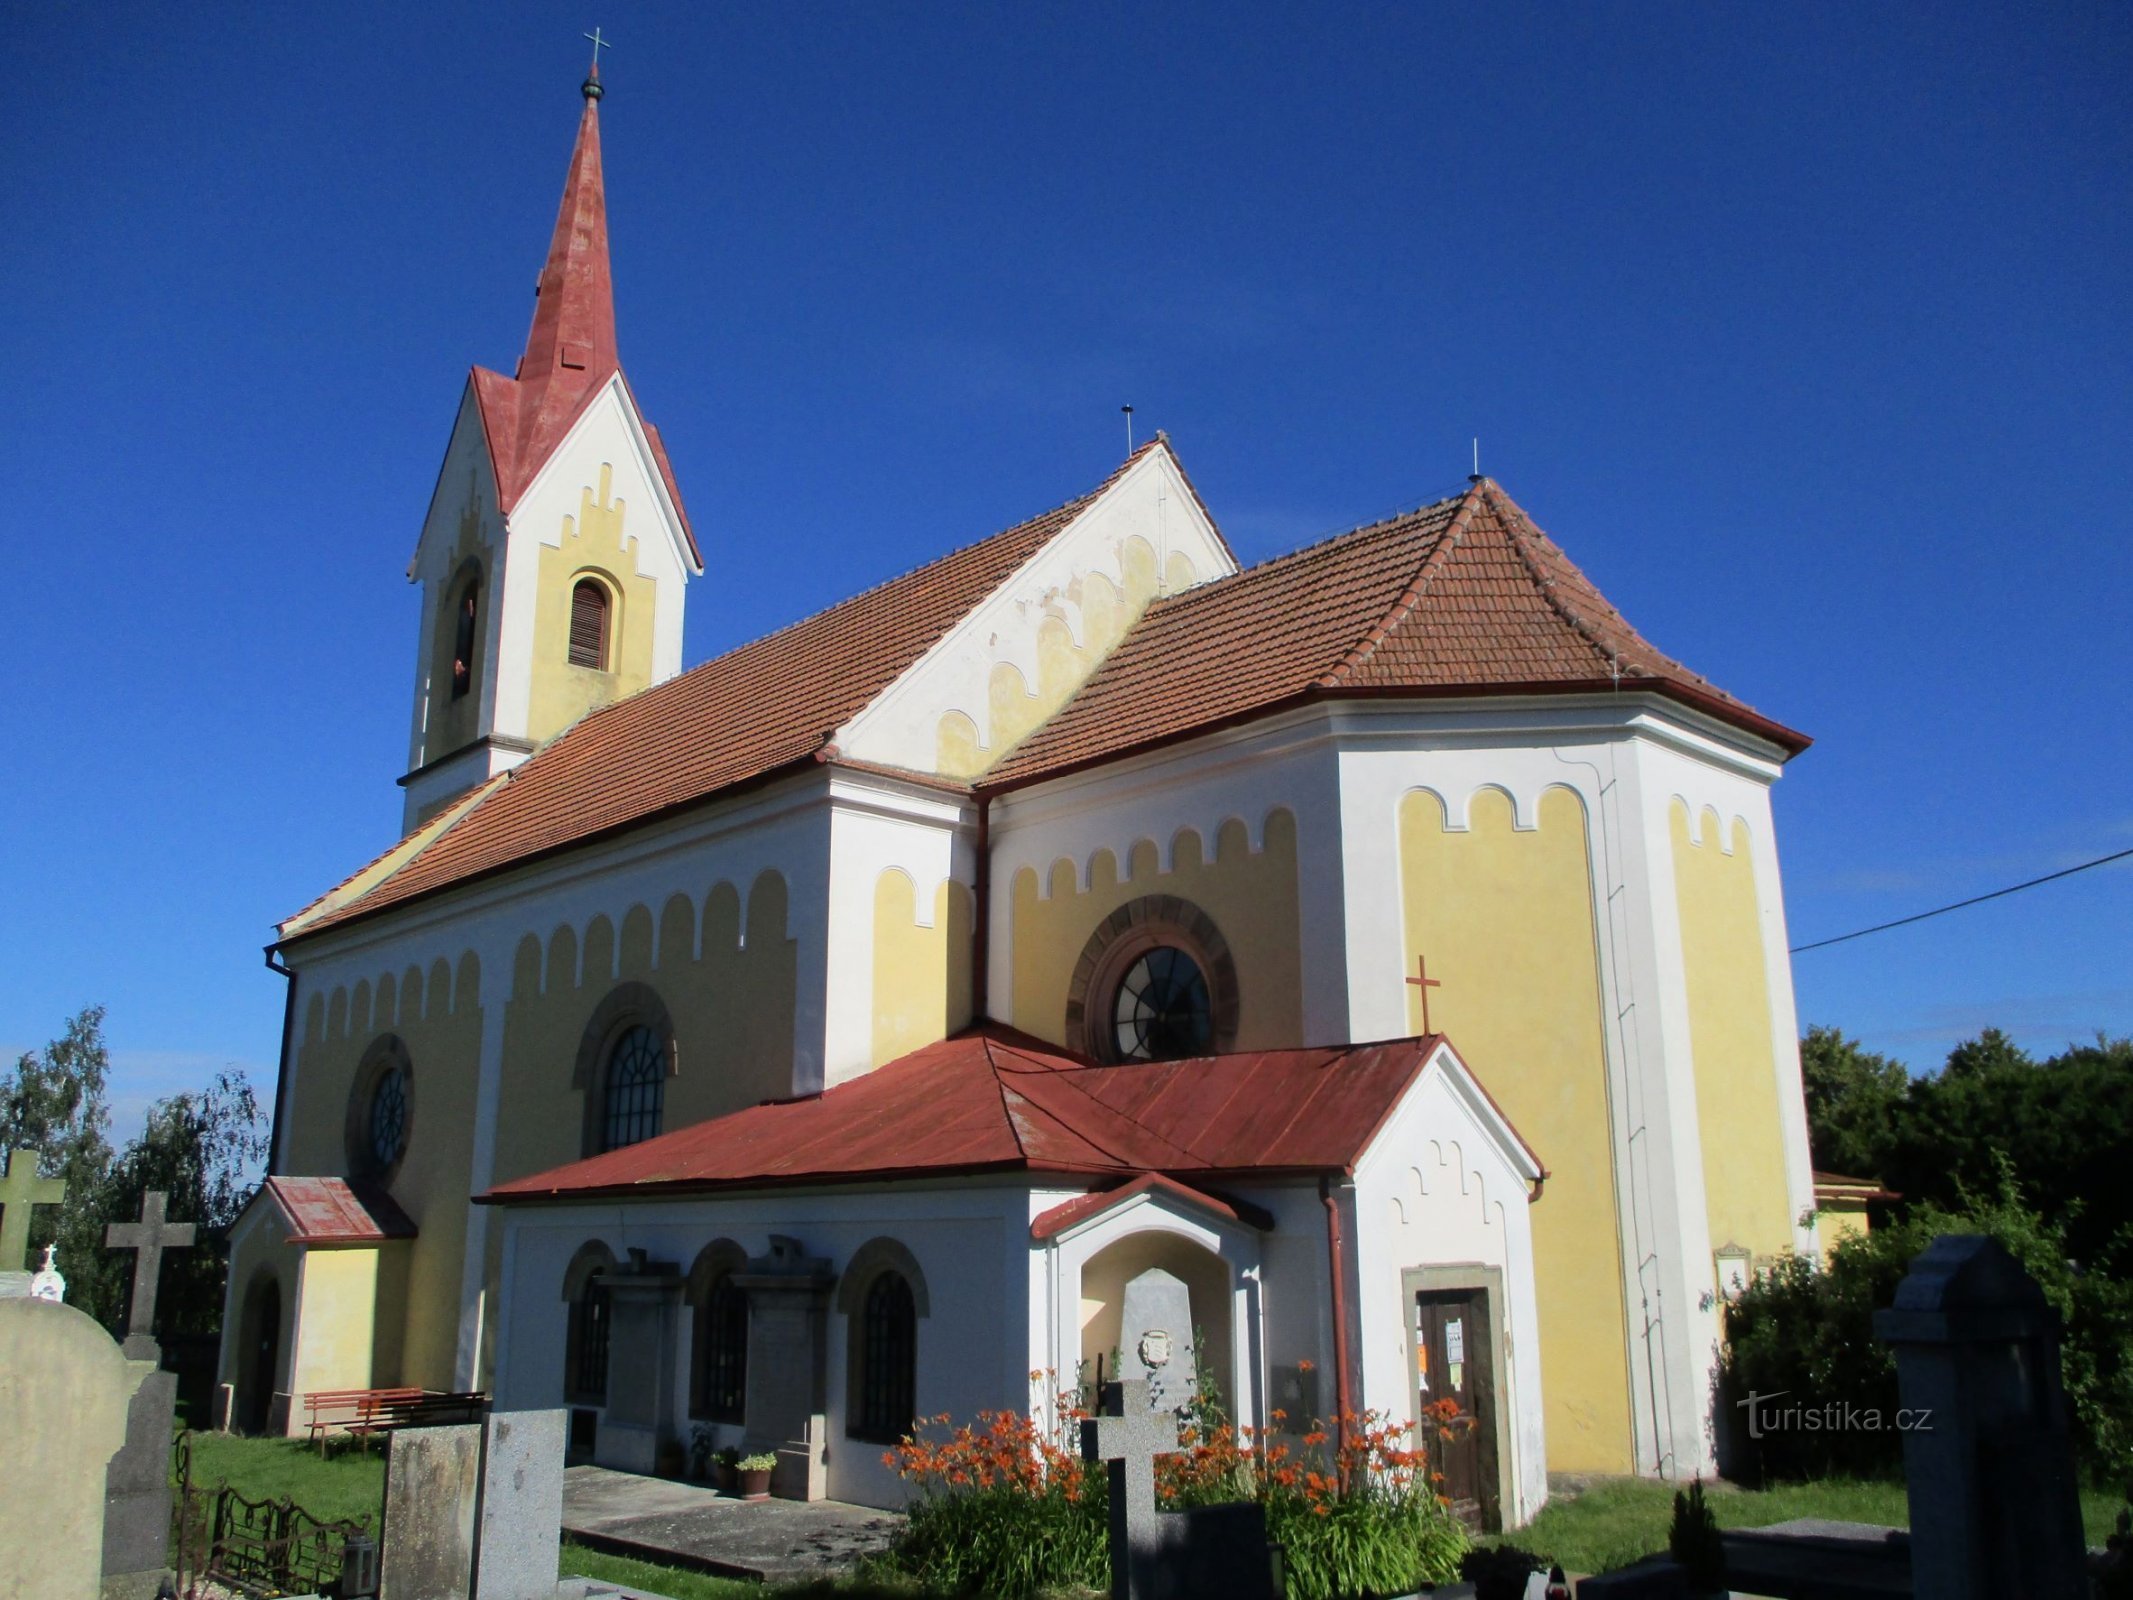 圣教堂Filip 和 Jakub（Mlékosrby，5.7.2020 年 XNUMX 月 XNUMX 日）